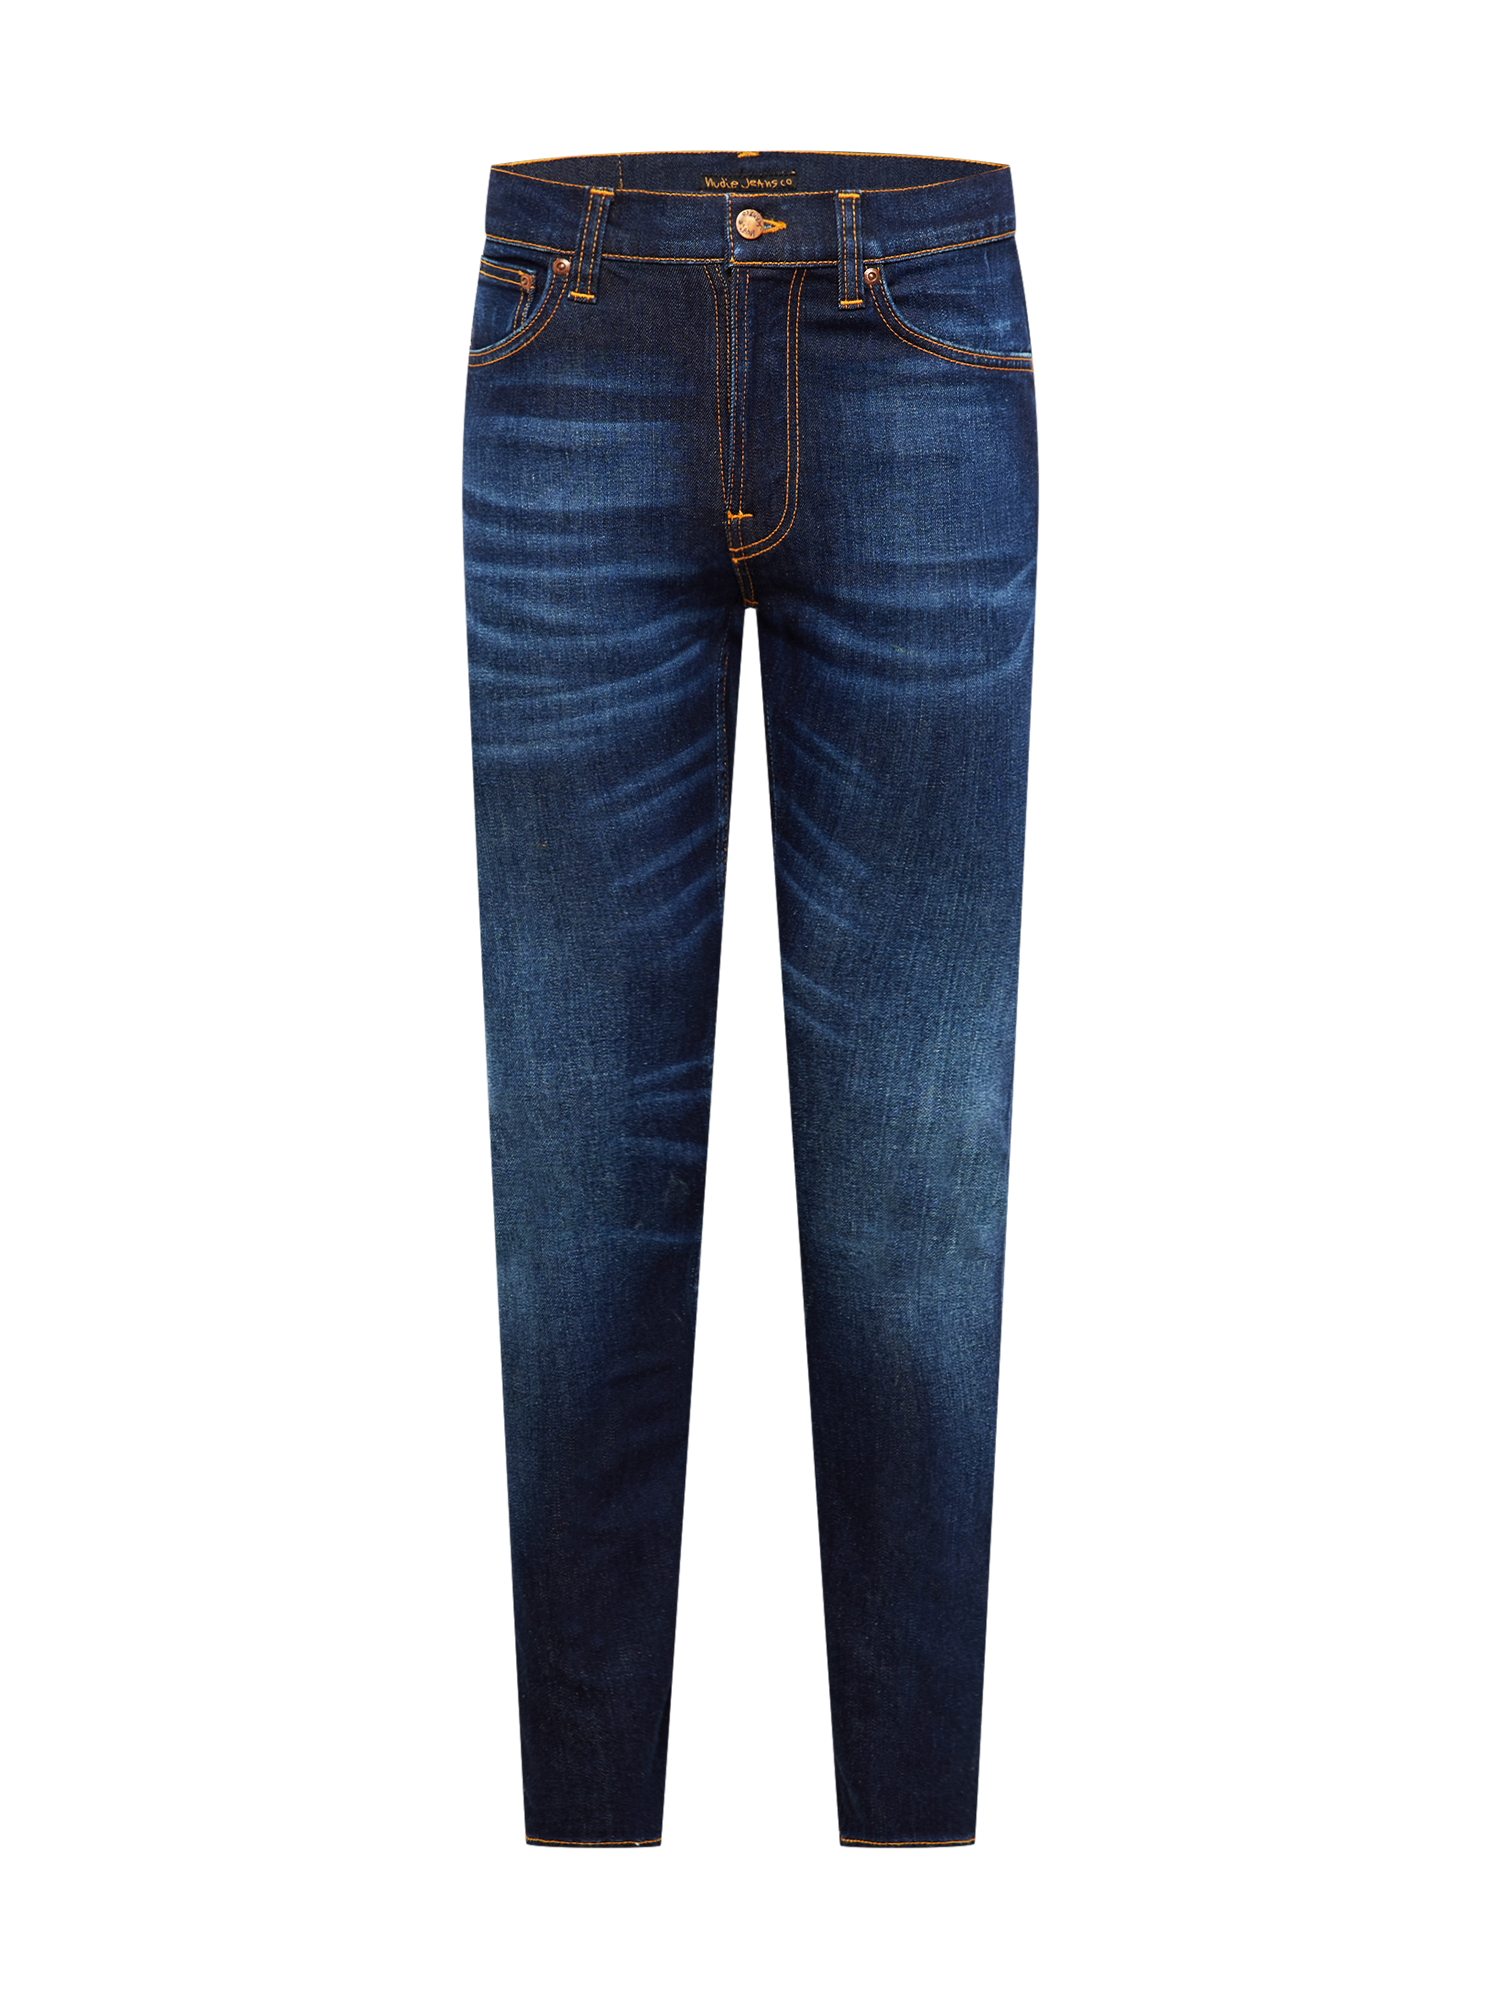 eKNyH Uomo Nudie Jeans Co Jeans Lean Dean in Blu 